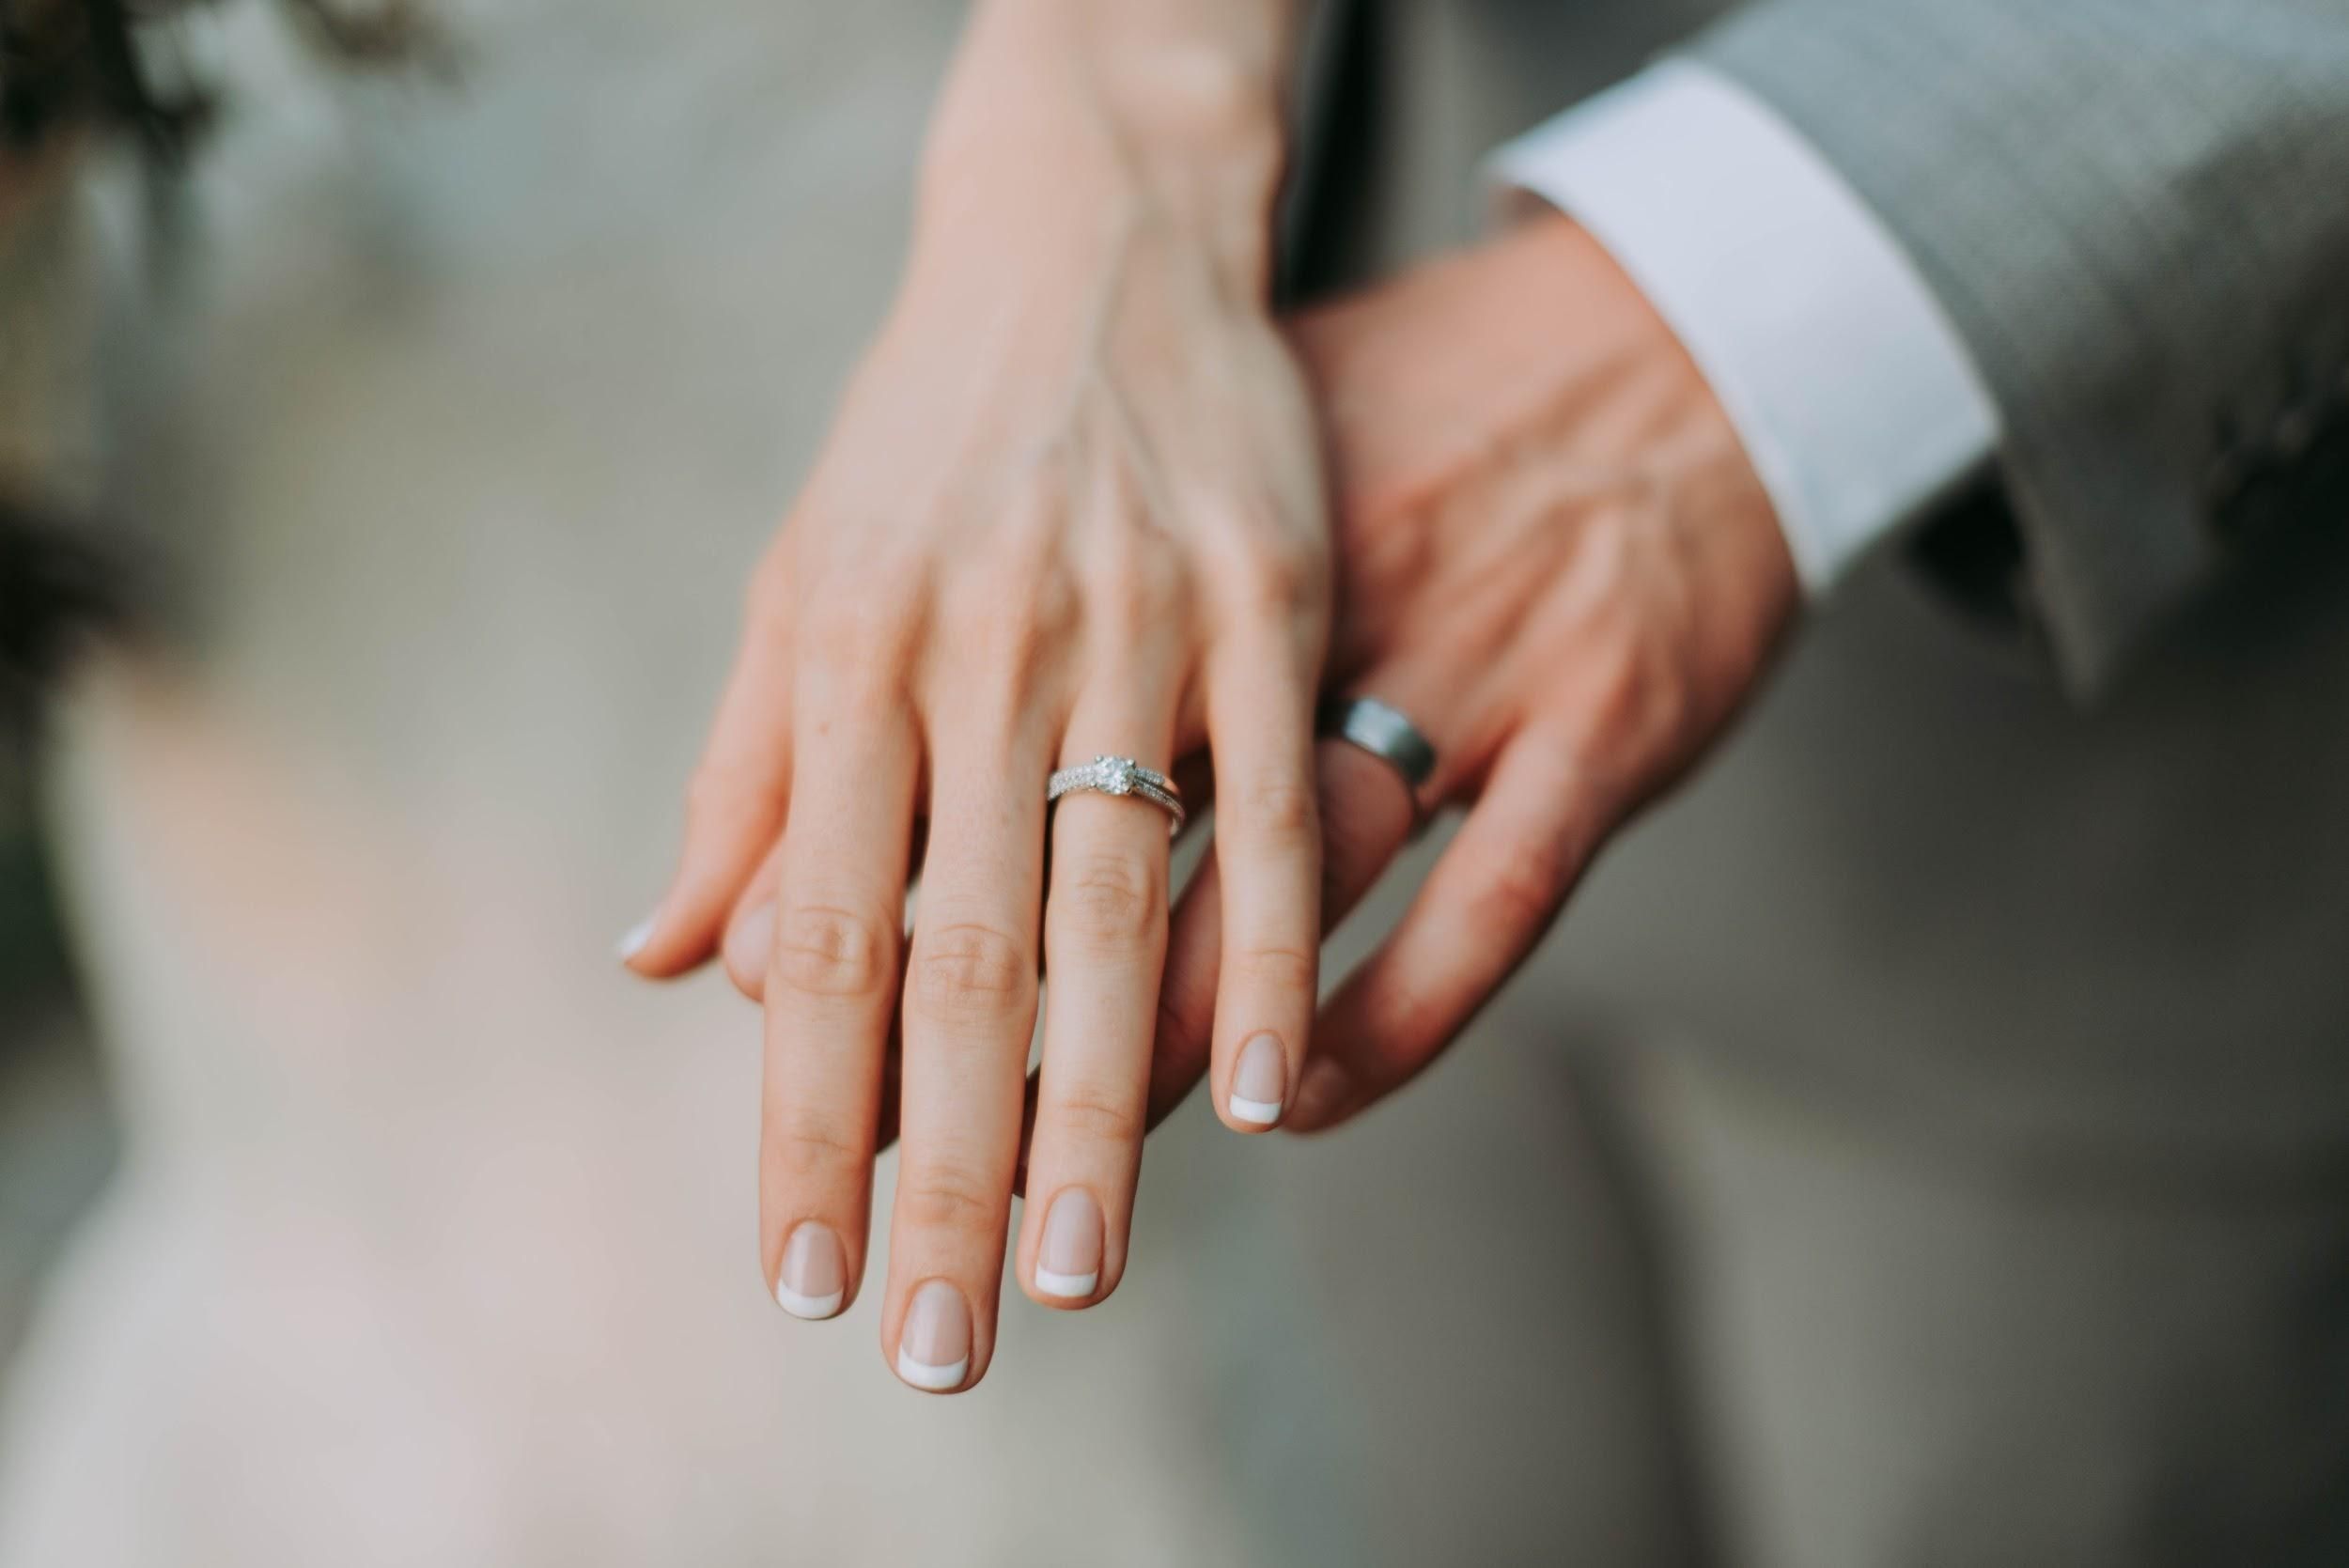 Скільки пар одружилися та розлучилися за час карантину в Україні: позитивні дані